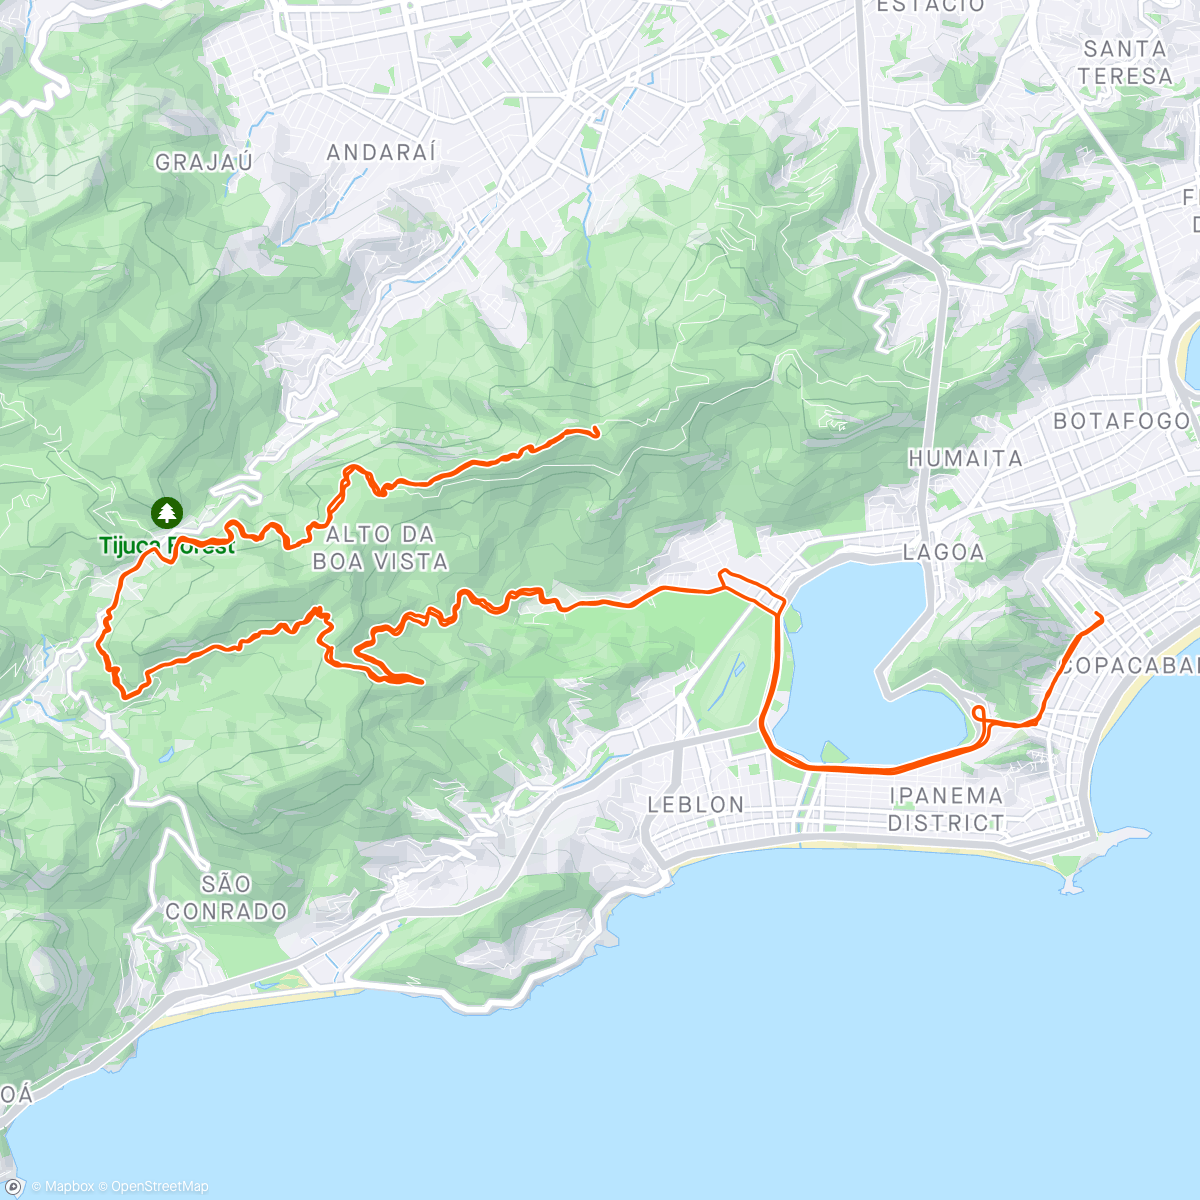 「Escalada Vista, Mesa, Bombeiros e Sumaré」活動的地圖